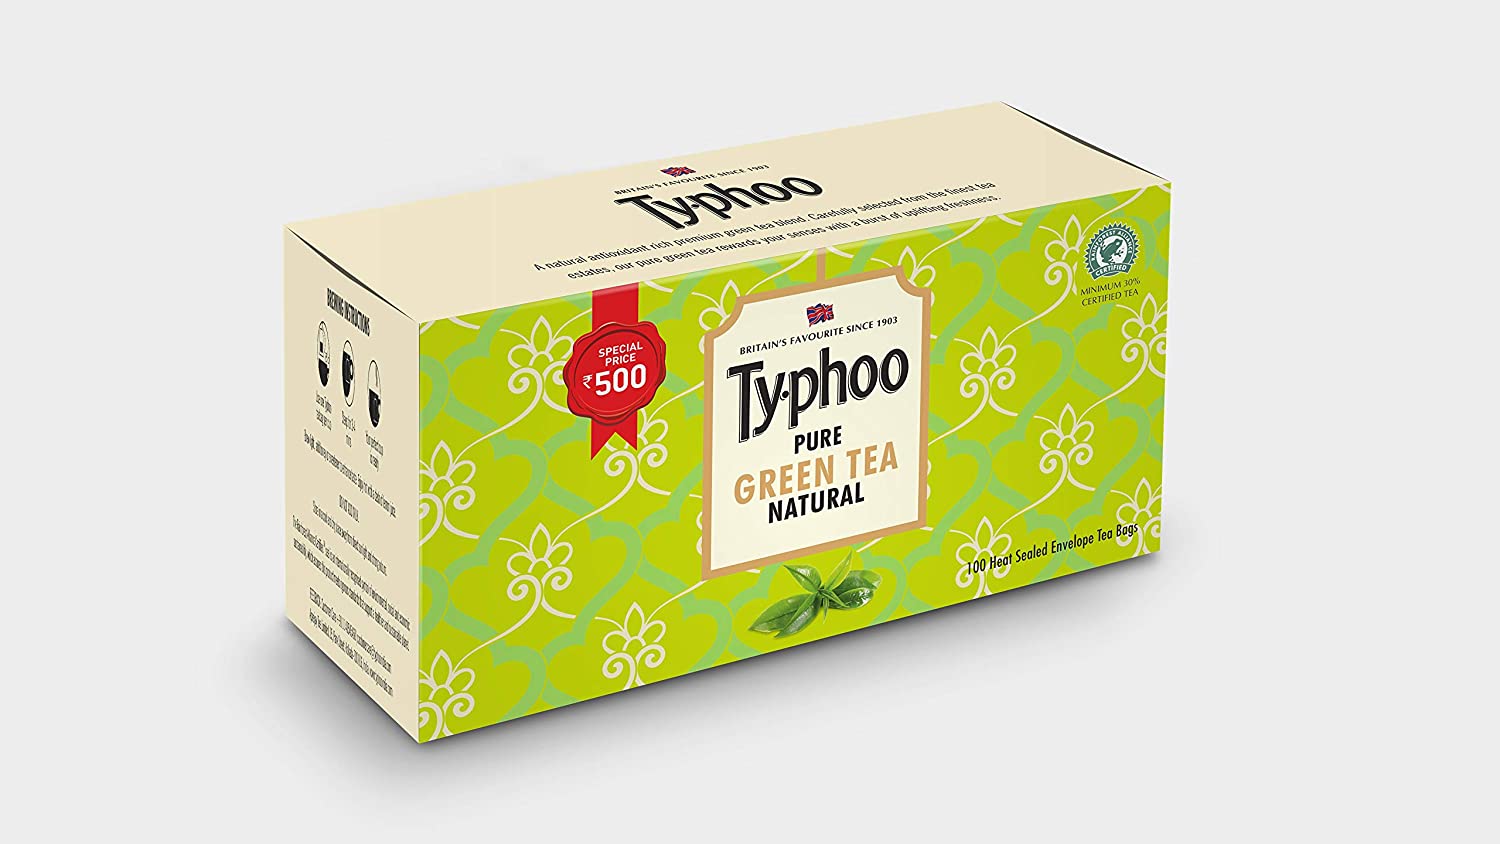 Typhoo Pure Natural Green Tea Bags